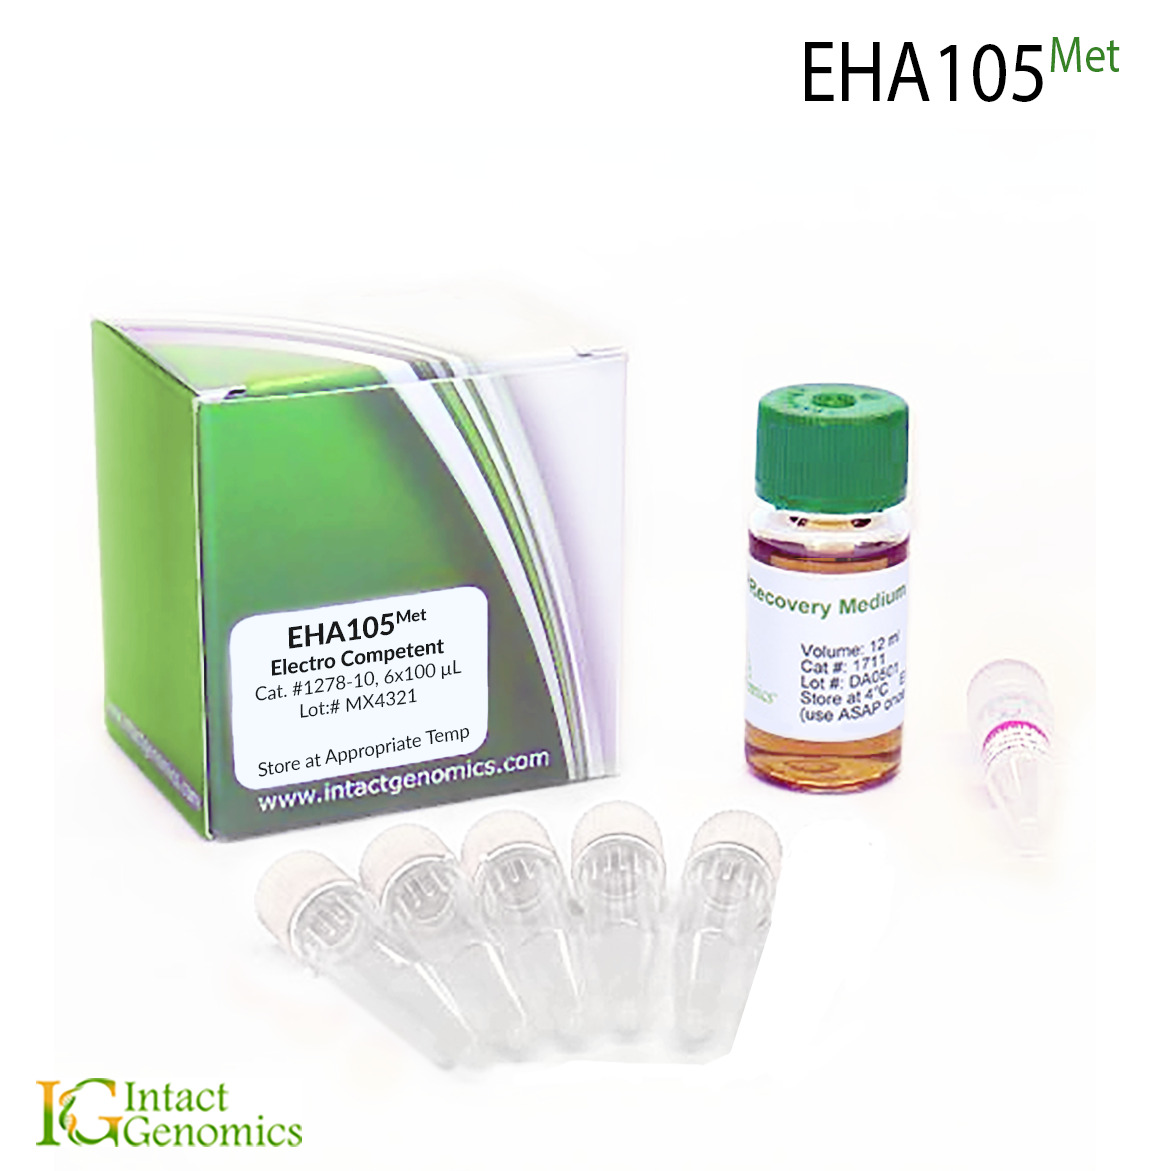 Methionine Auxotrophic EHA105 electrocompetent Cells